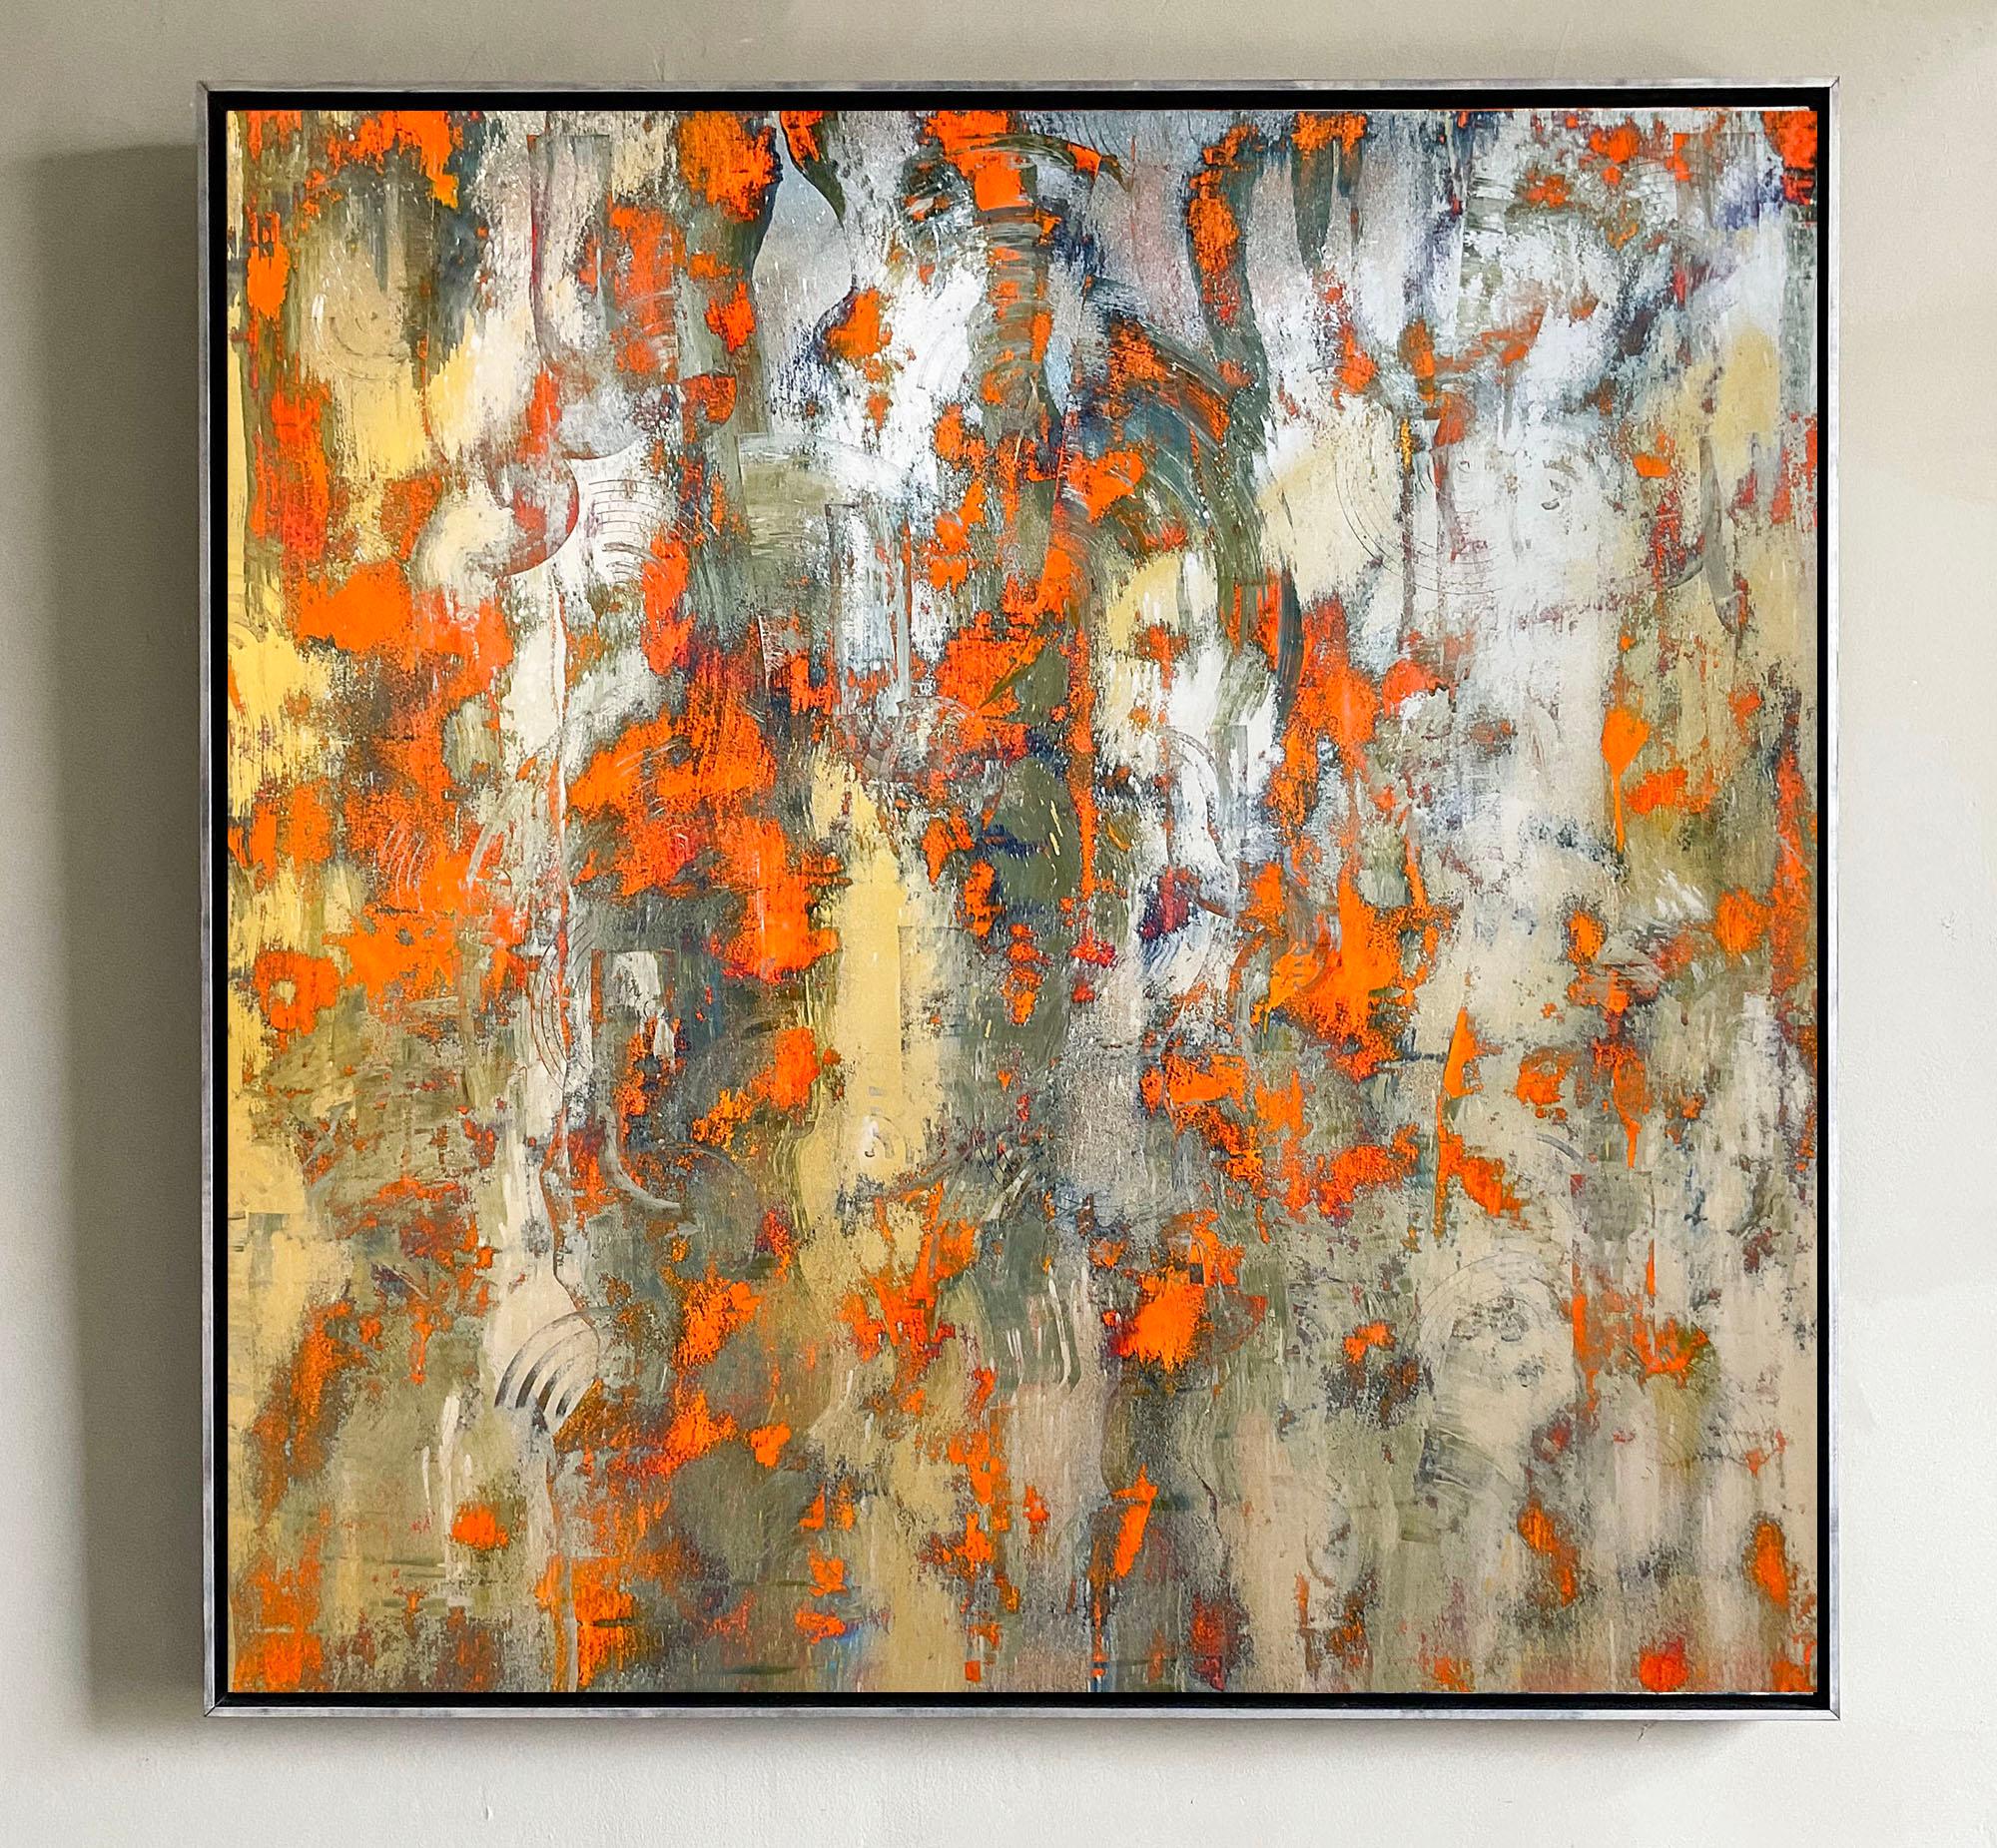 Sans titre Orange Silver and Gold : Peinture expressionniste abstraite - Expressionnisme abstrait Painting par Bruce Murphy